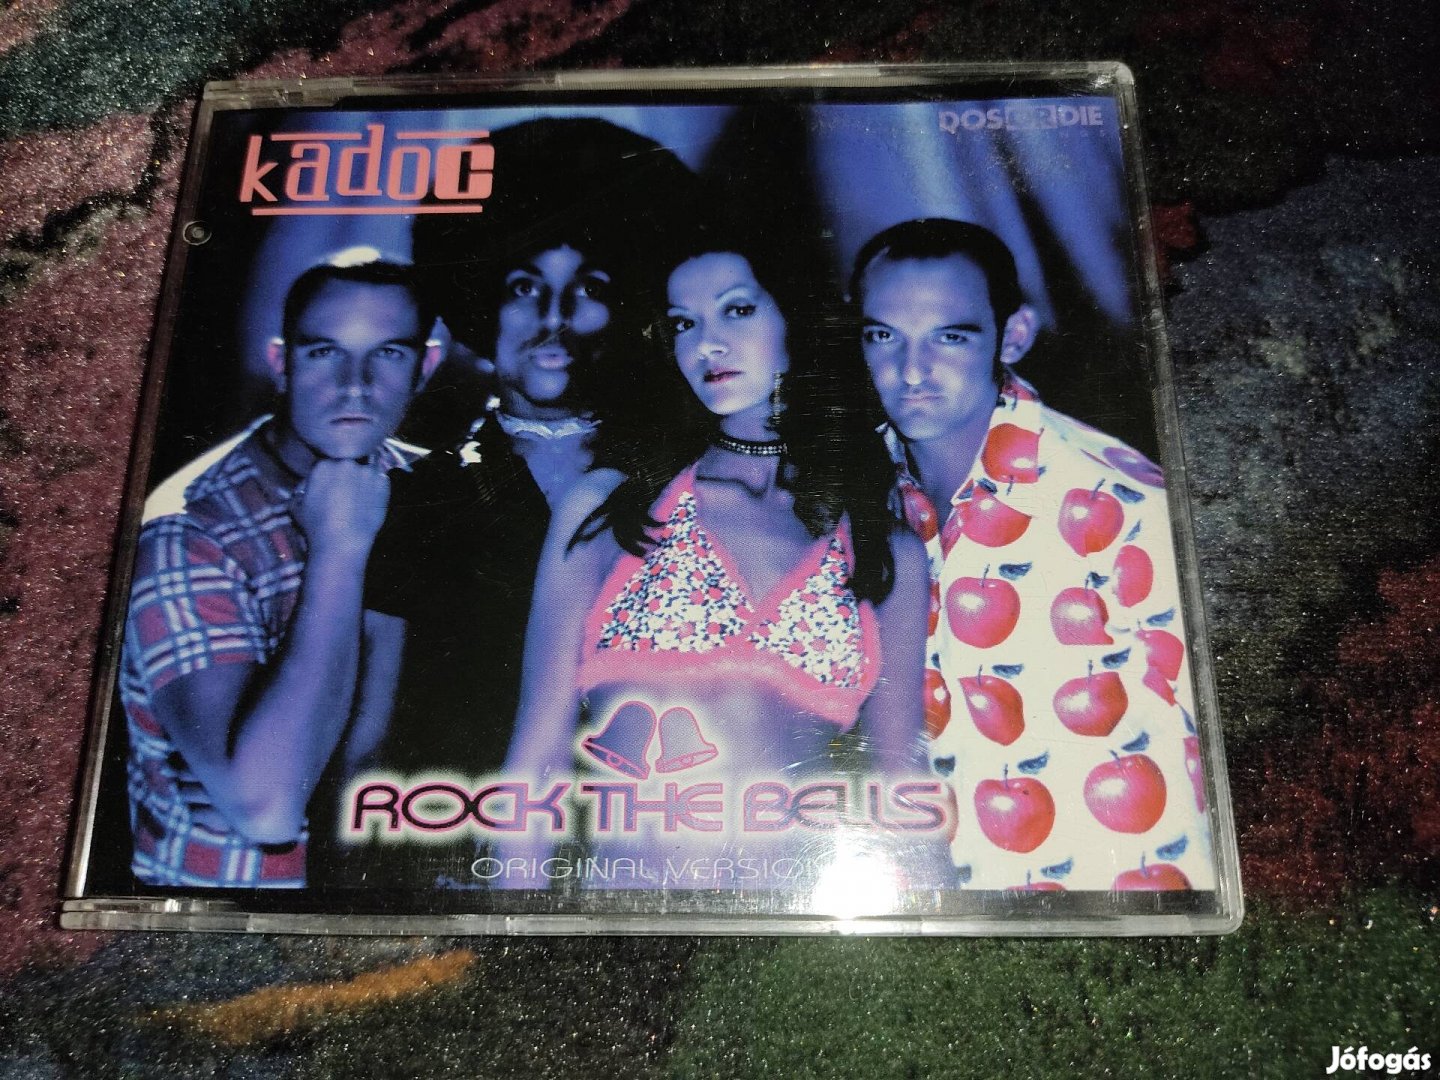 Kadoc - Rock The Bells Maxi CD (1997)